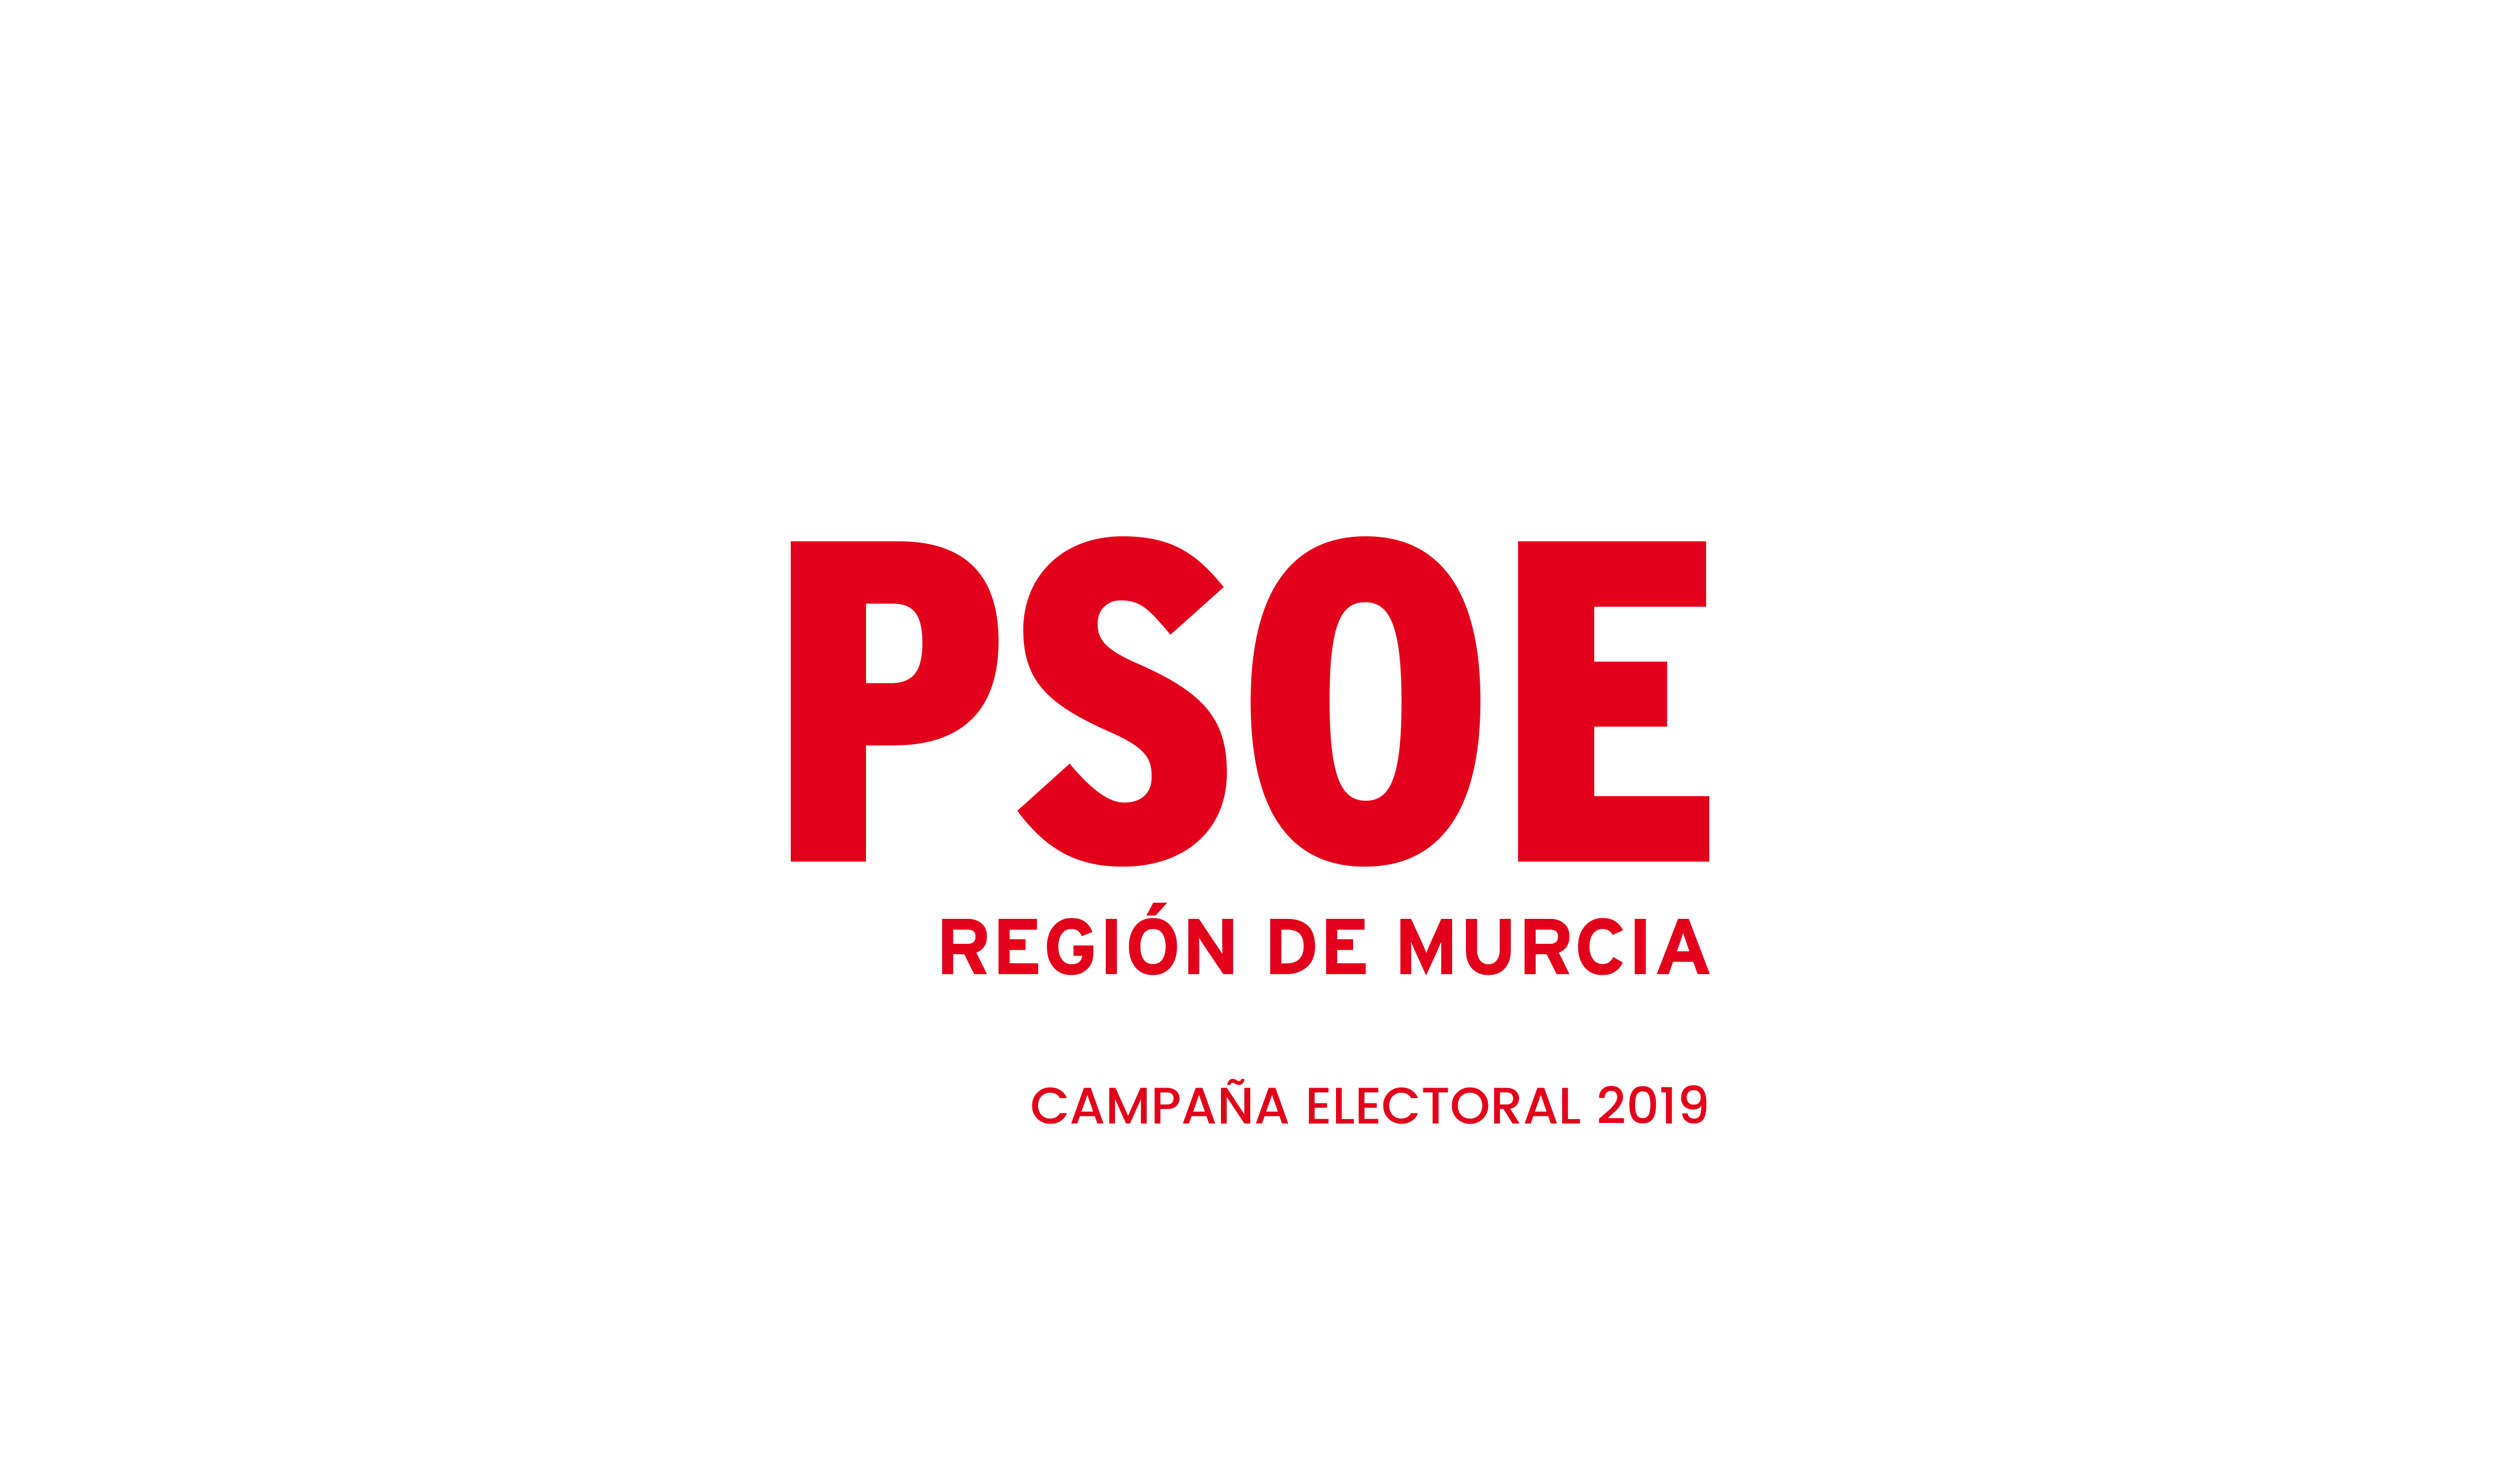 PSOE REGIÓN DE MURCIA